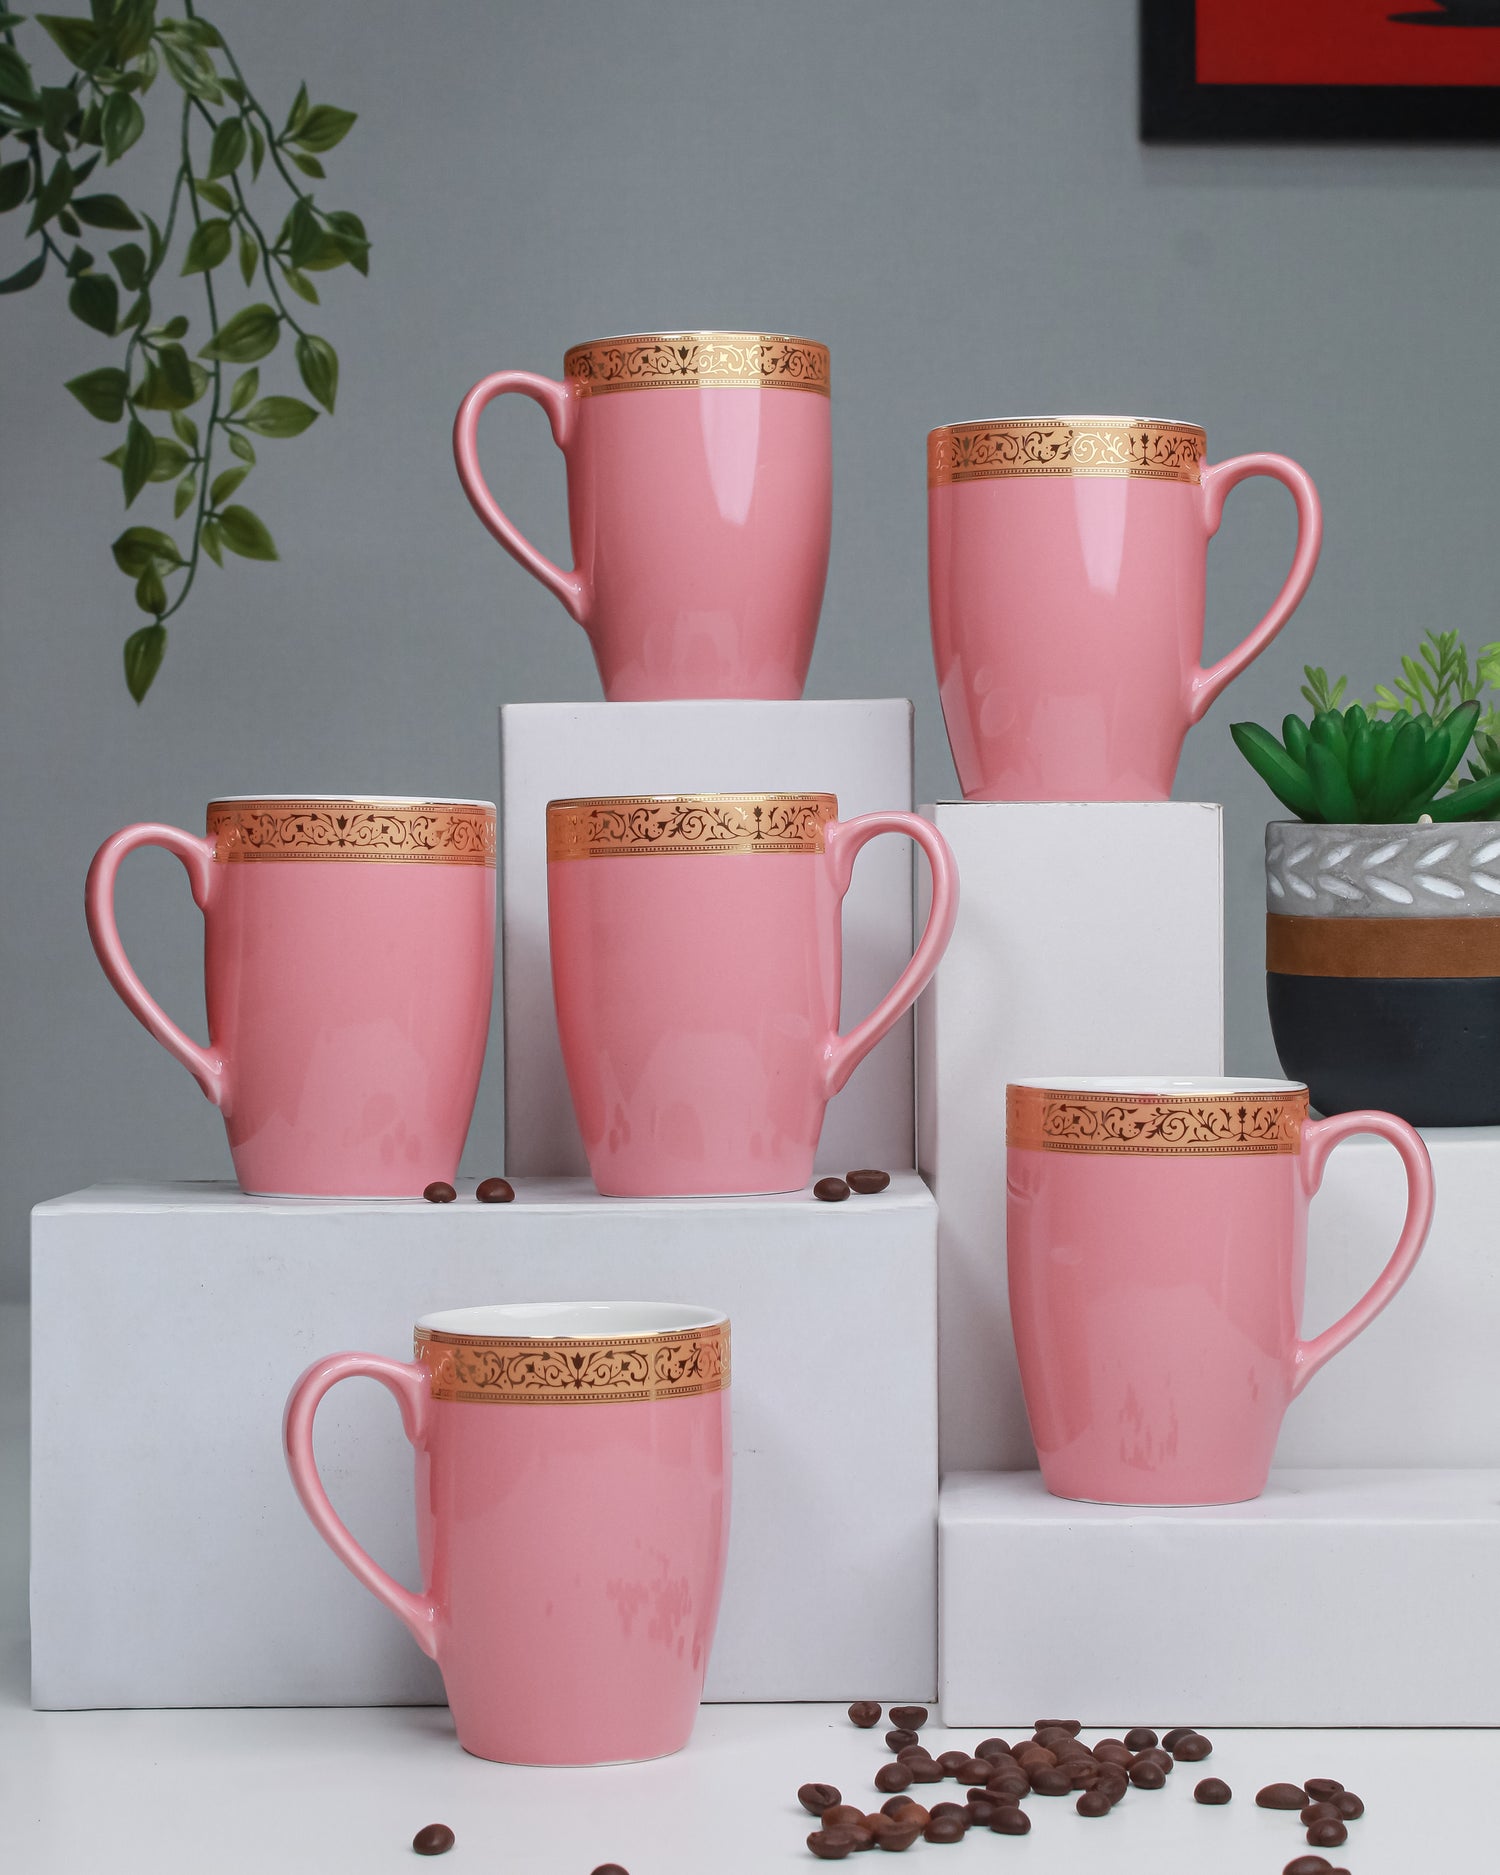 Scarlet: Premium Porcelain Mugs in Pastel Colors